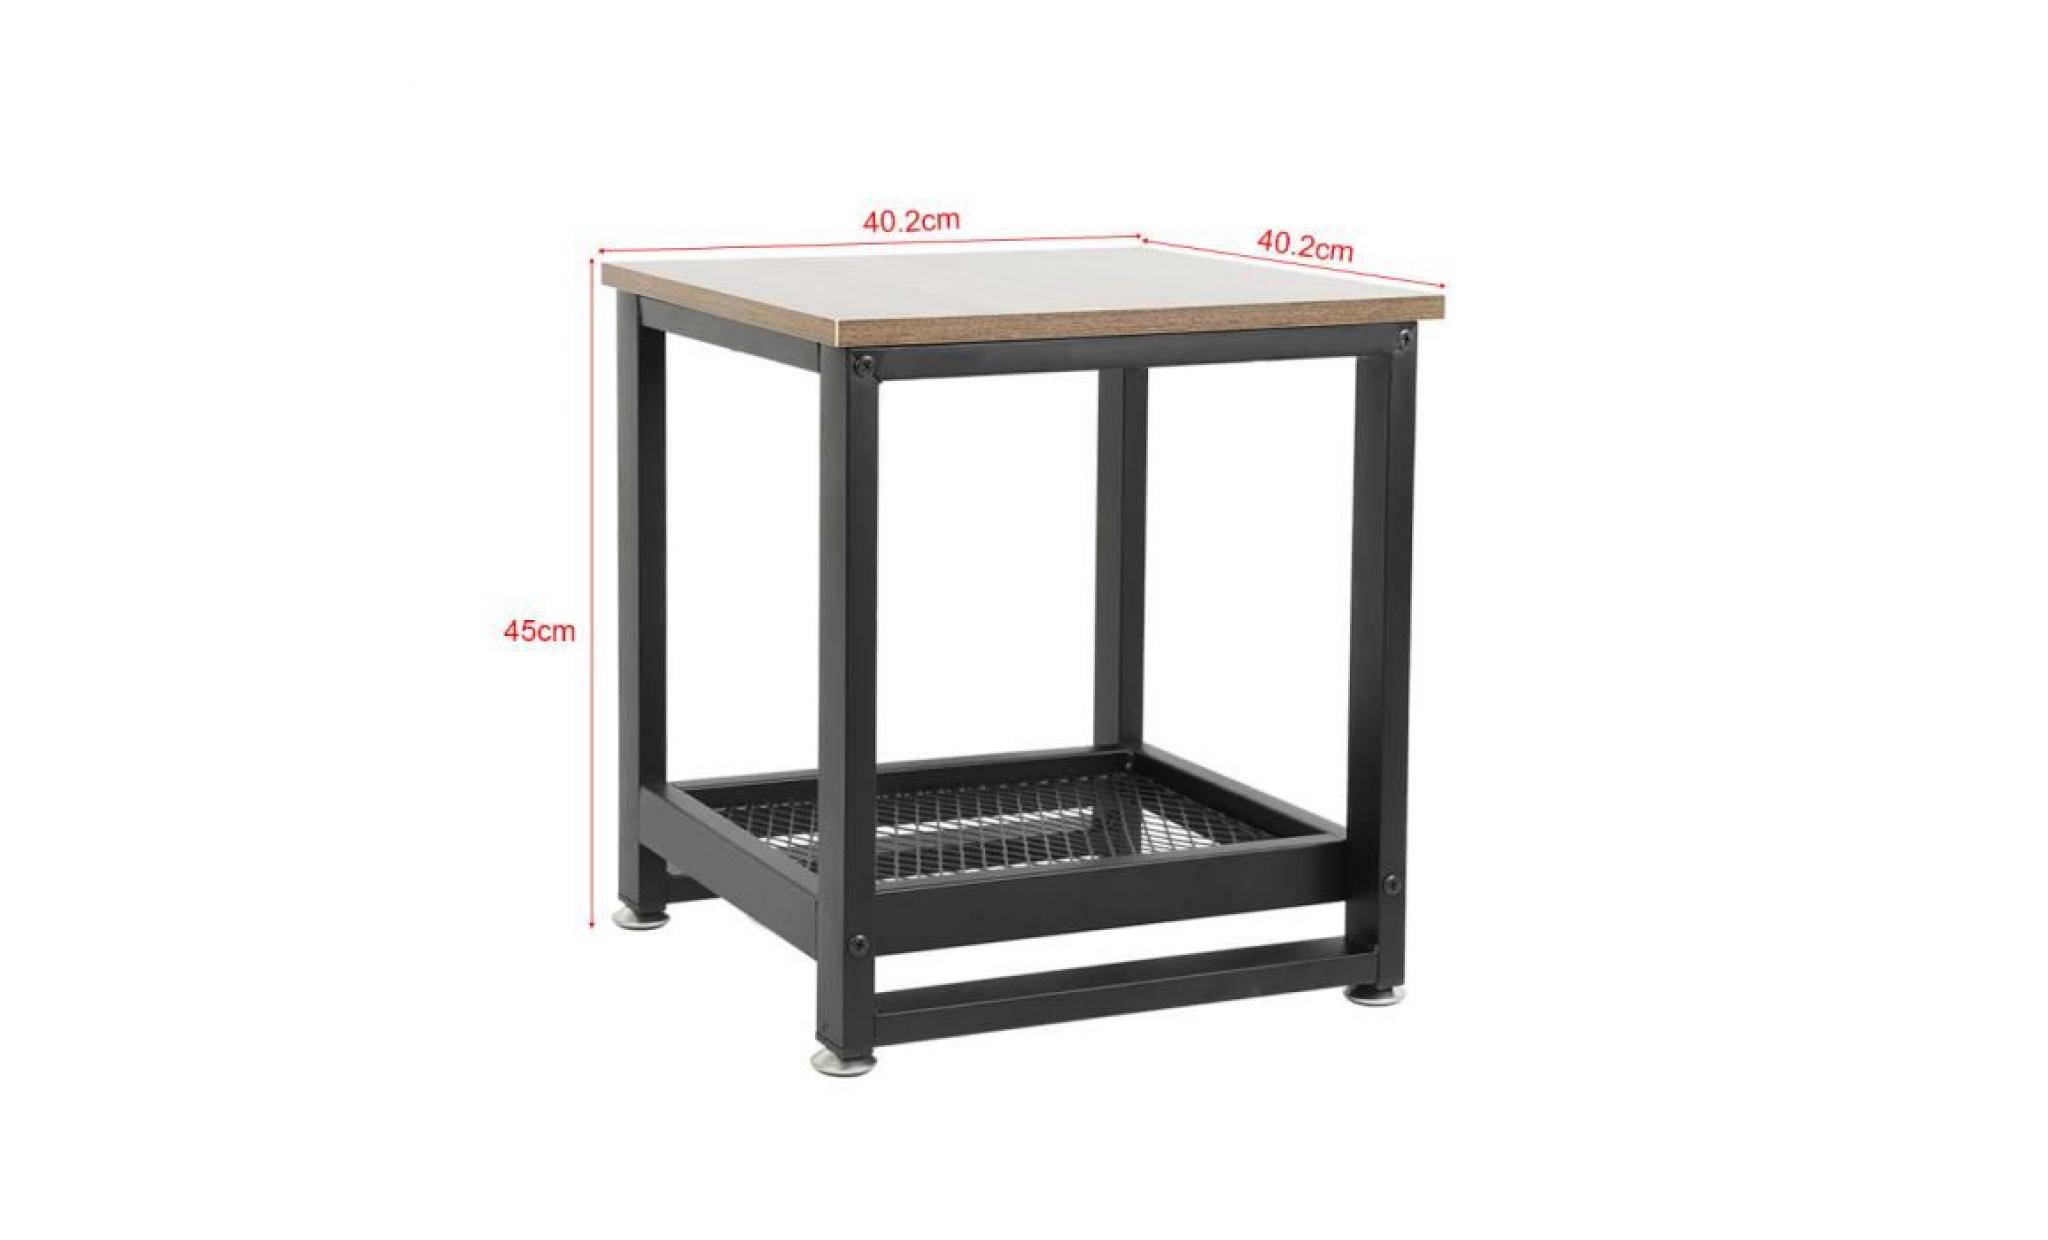 jeobest® tables de chevet lot de 2 style industriel avec rangement armature en métal table rétro pas cher